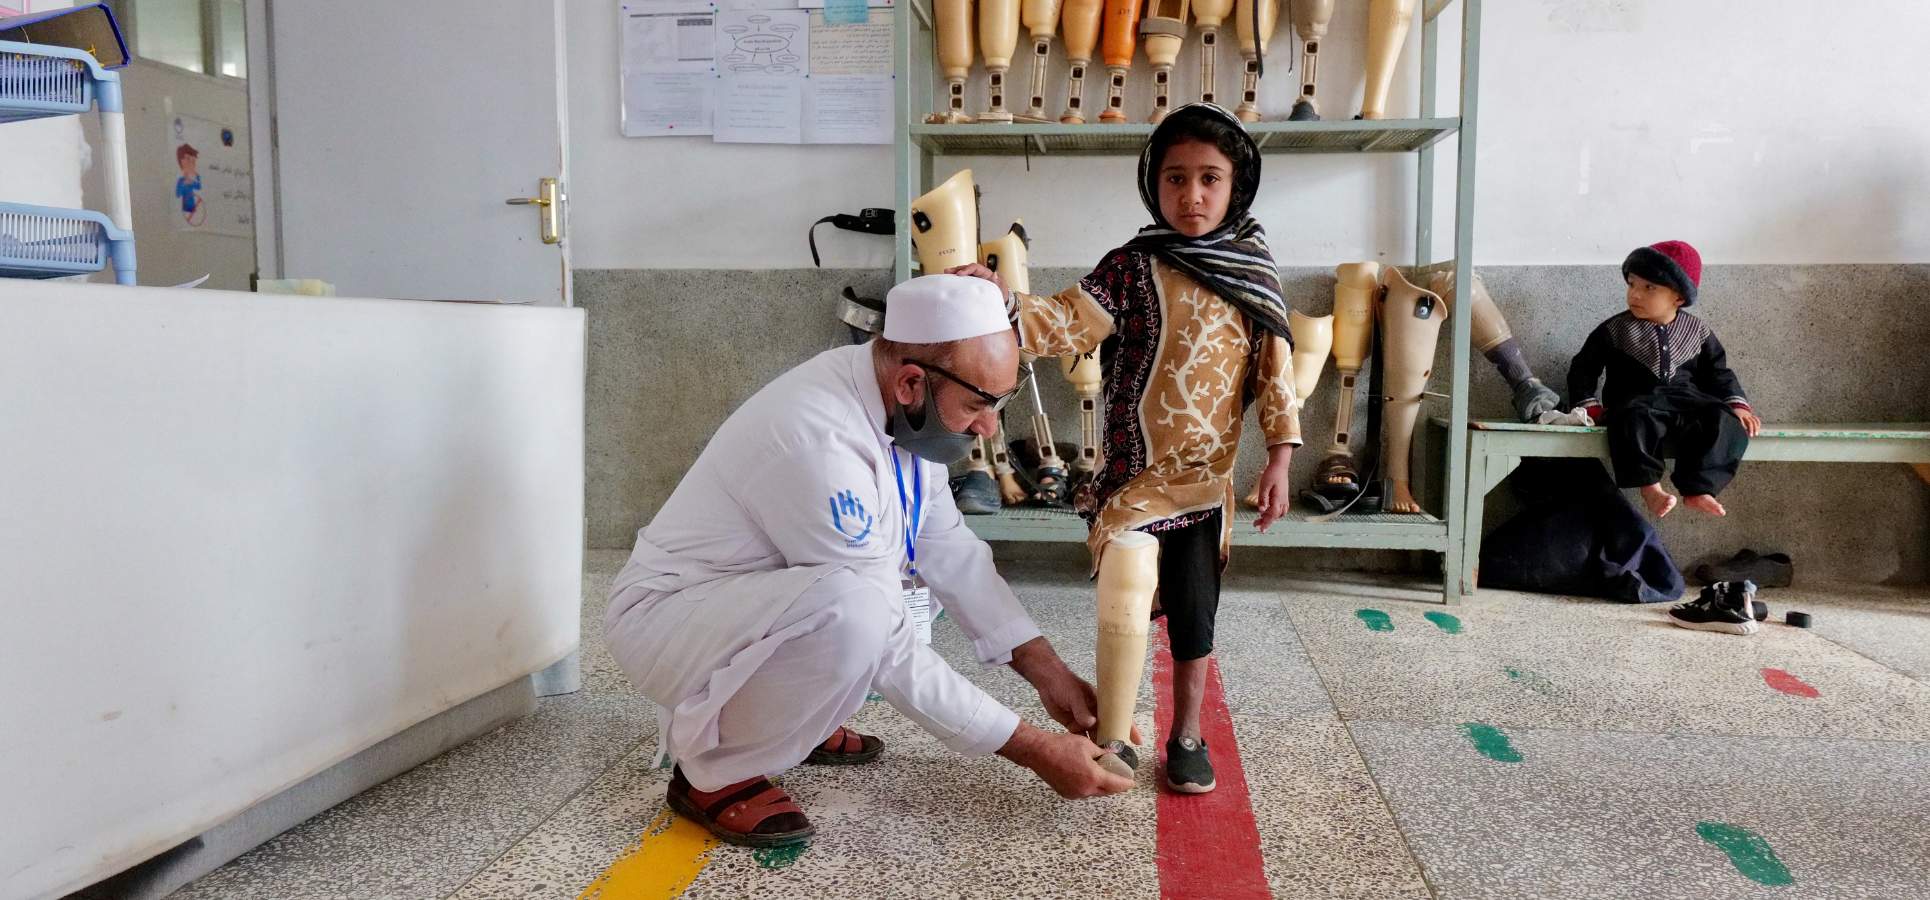 Ein junges Mädchen bekommt von einem Experten von HI eine Prothese angepasst. Sie stehen in einem klinischen Untersuchungsraum, im Hintergrund ist ein Regal mit Prothesen zu sehen.